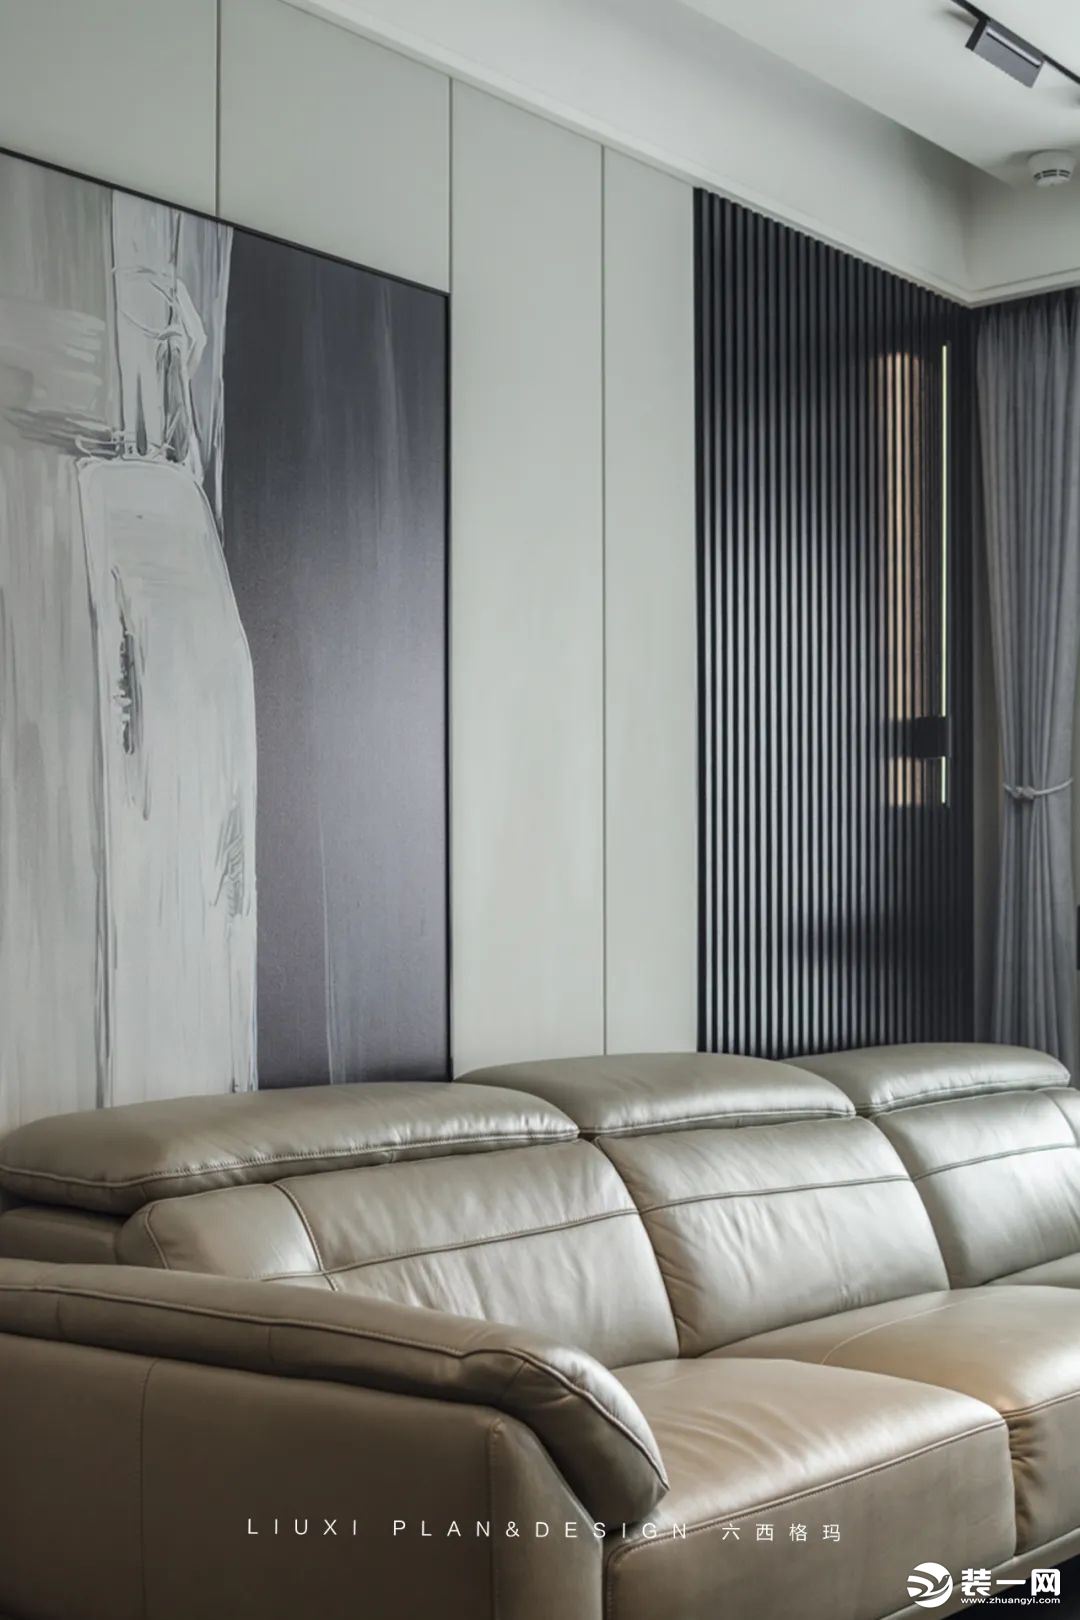 沙发背景墙由墙板+装饰画+长城板以及线性灯组成，冰川灰墙板硬包造型，加上一幅装饰画，营造出简约大方的